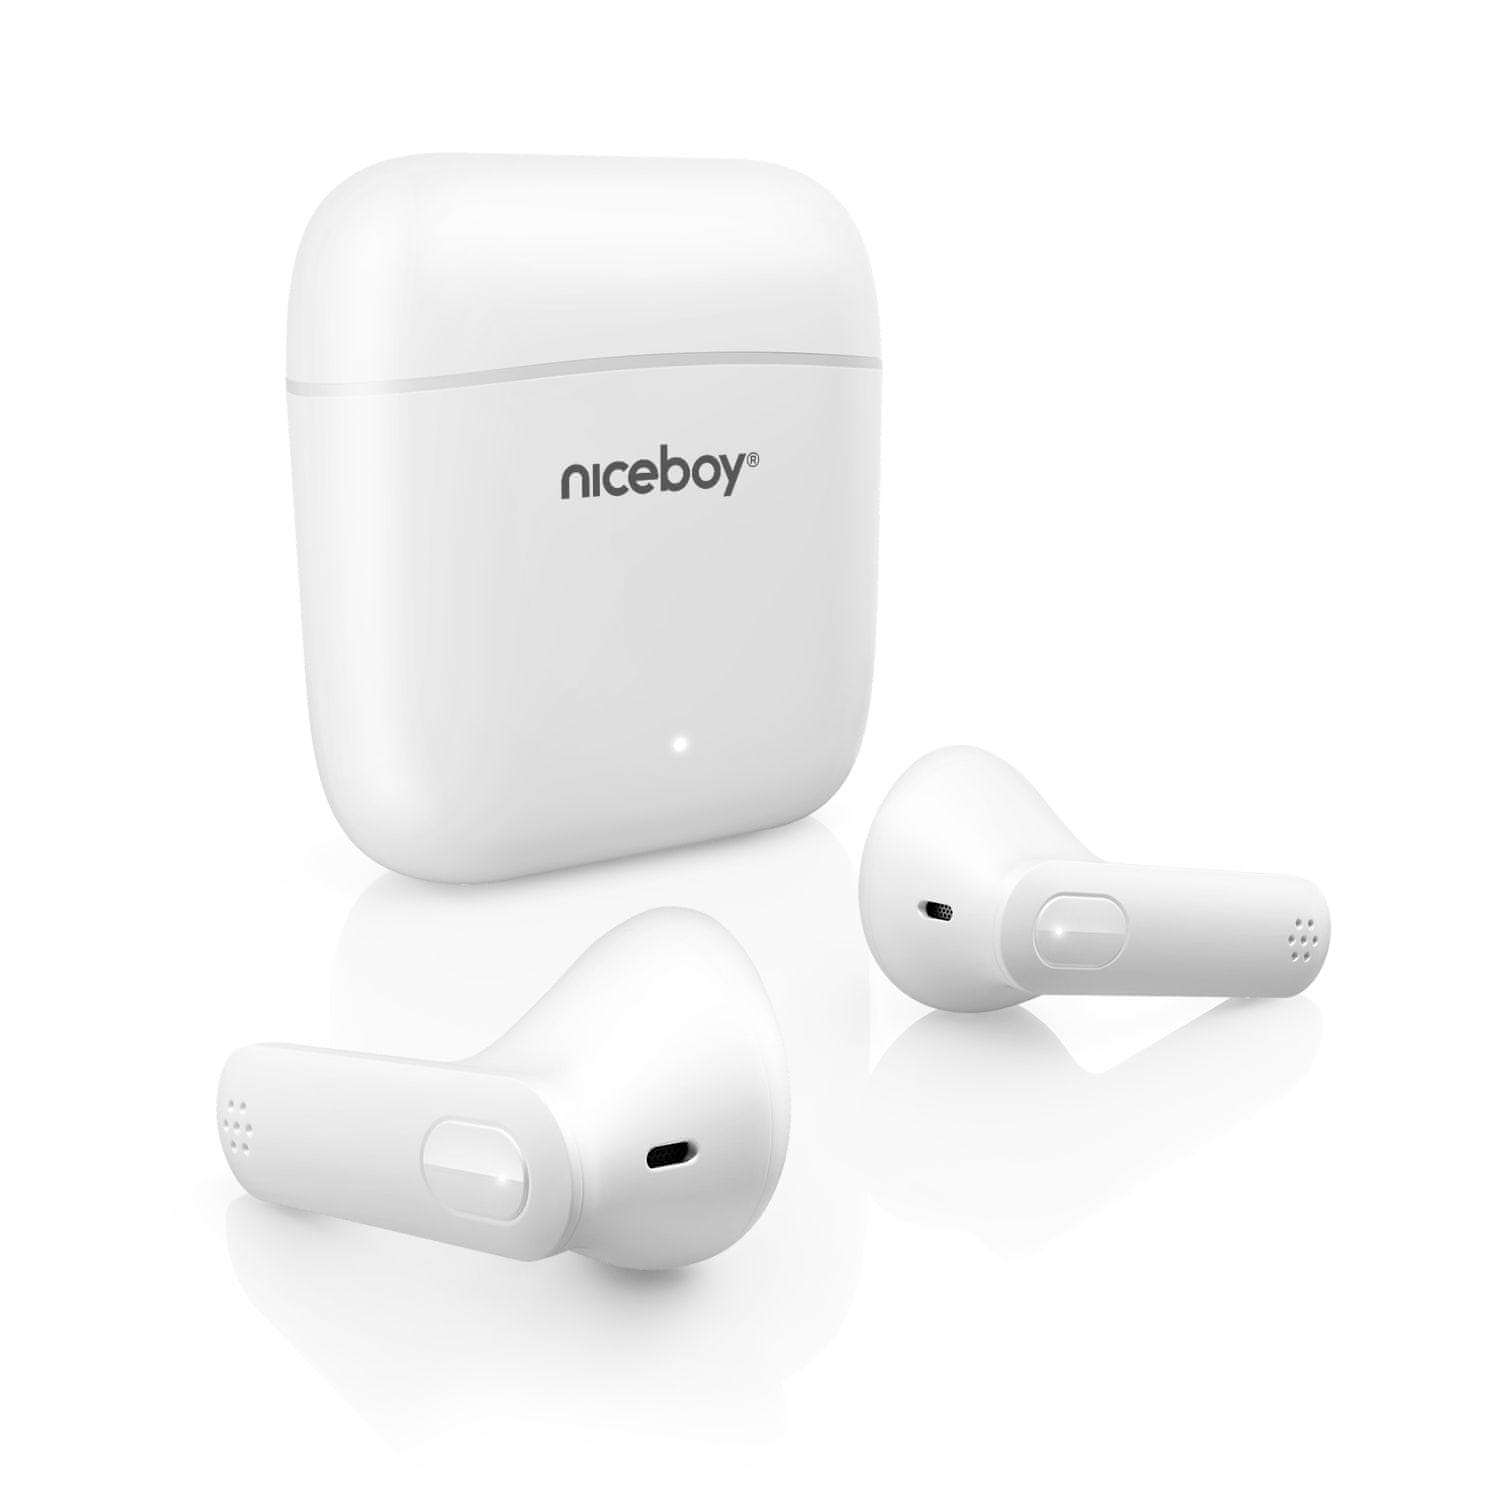  Bluetooth prenosne slušalke niceboy hive pods 3 za brezžični polnilnik ipx4 aac sbc 20 h delovanje povsem primerno za športnike mikrofon prostoročno glasovno upravljanje top zvok 10mm zmogljivi pretvorniki